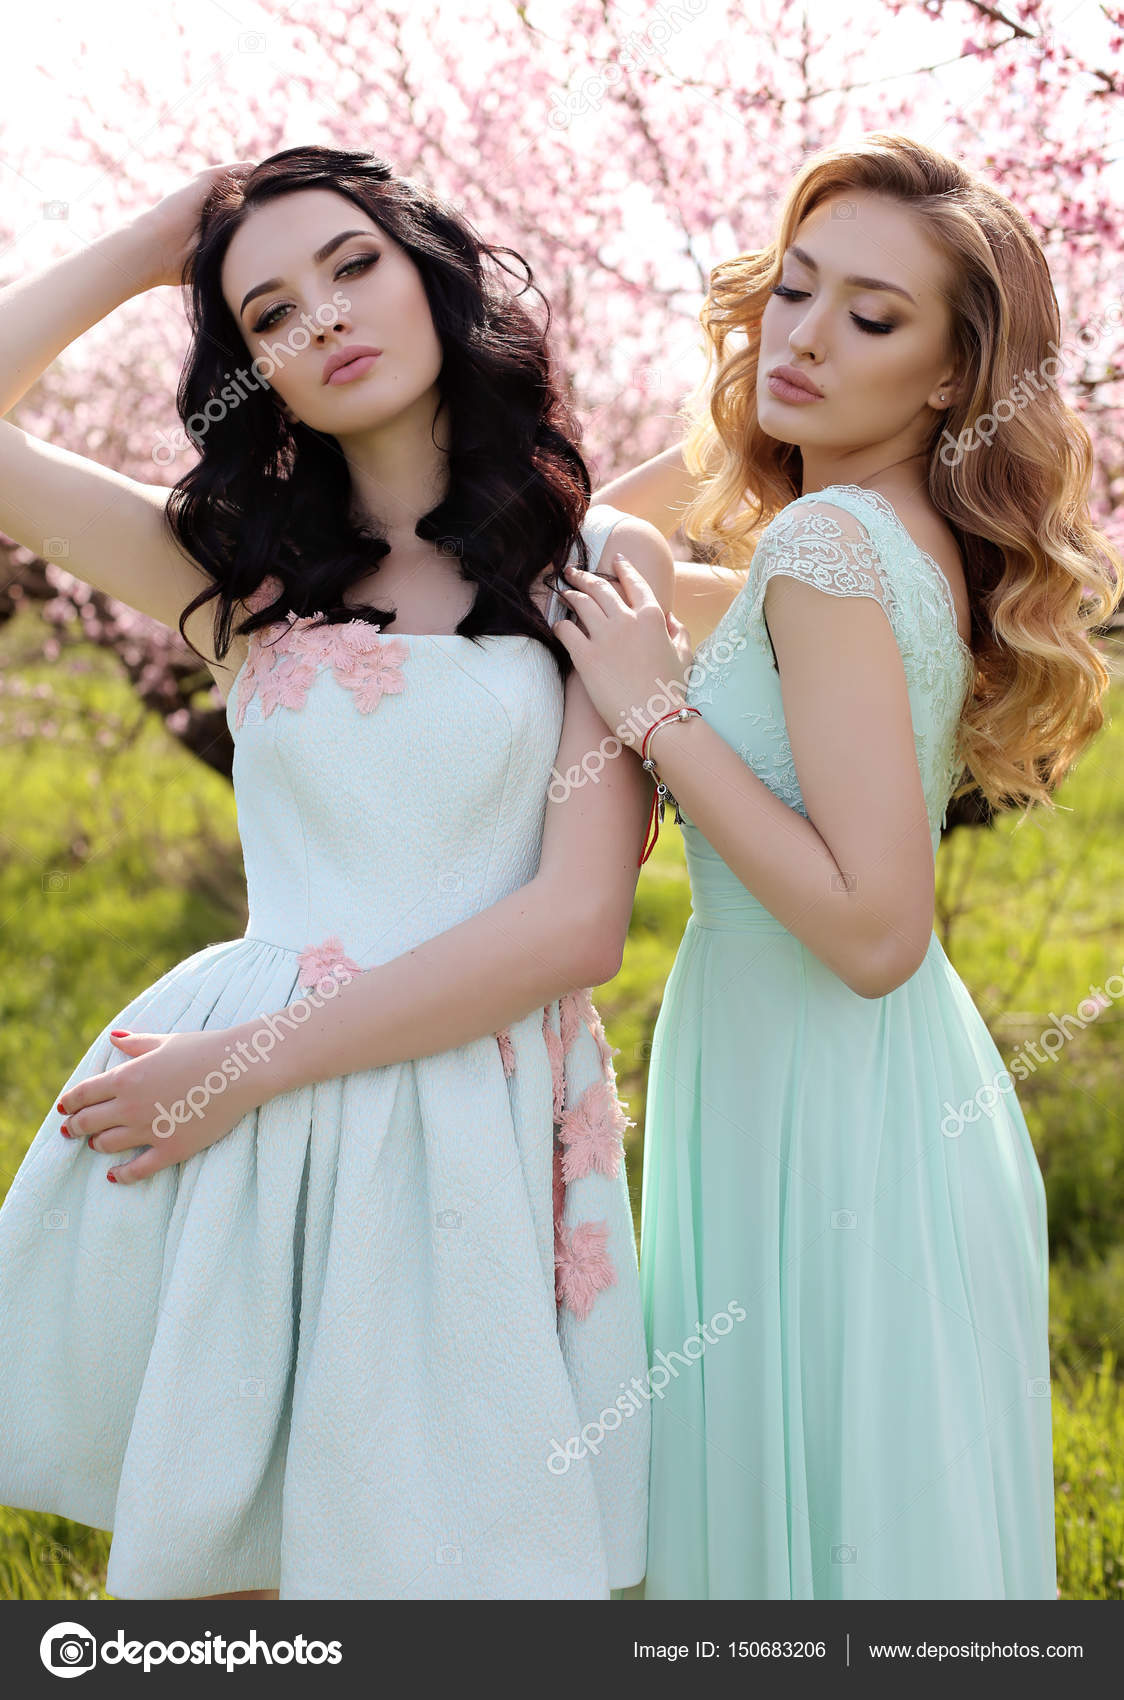 Hermosas mujeres en vestidos elegantes posando en el jardín de flores:  fotografía de stock © Slava_14 #150683206 | Depositphotos